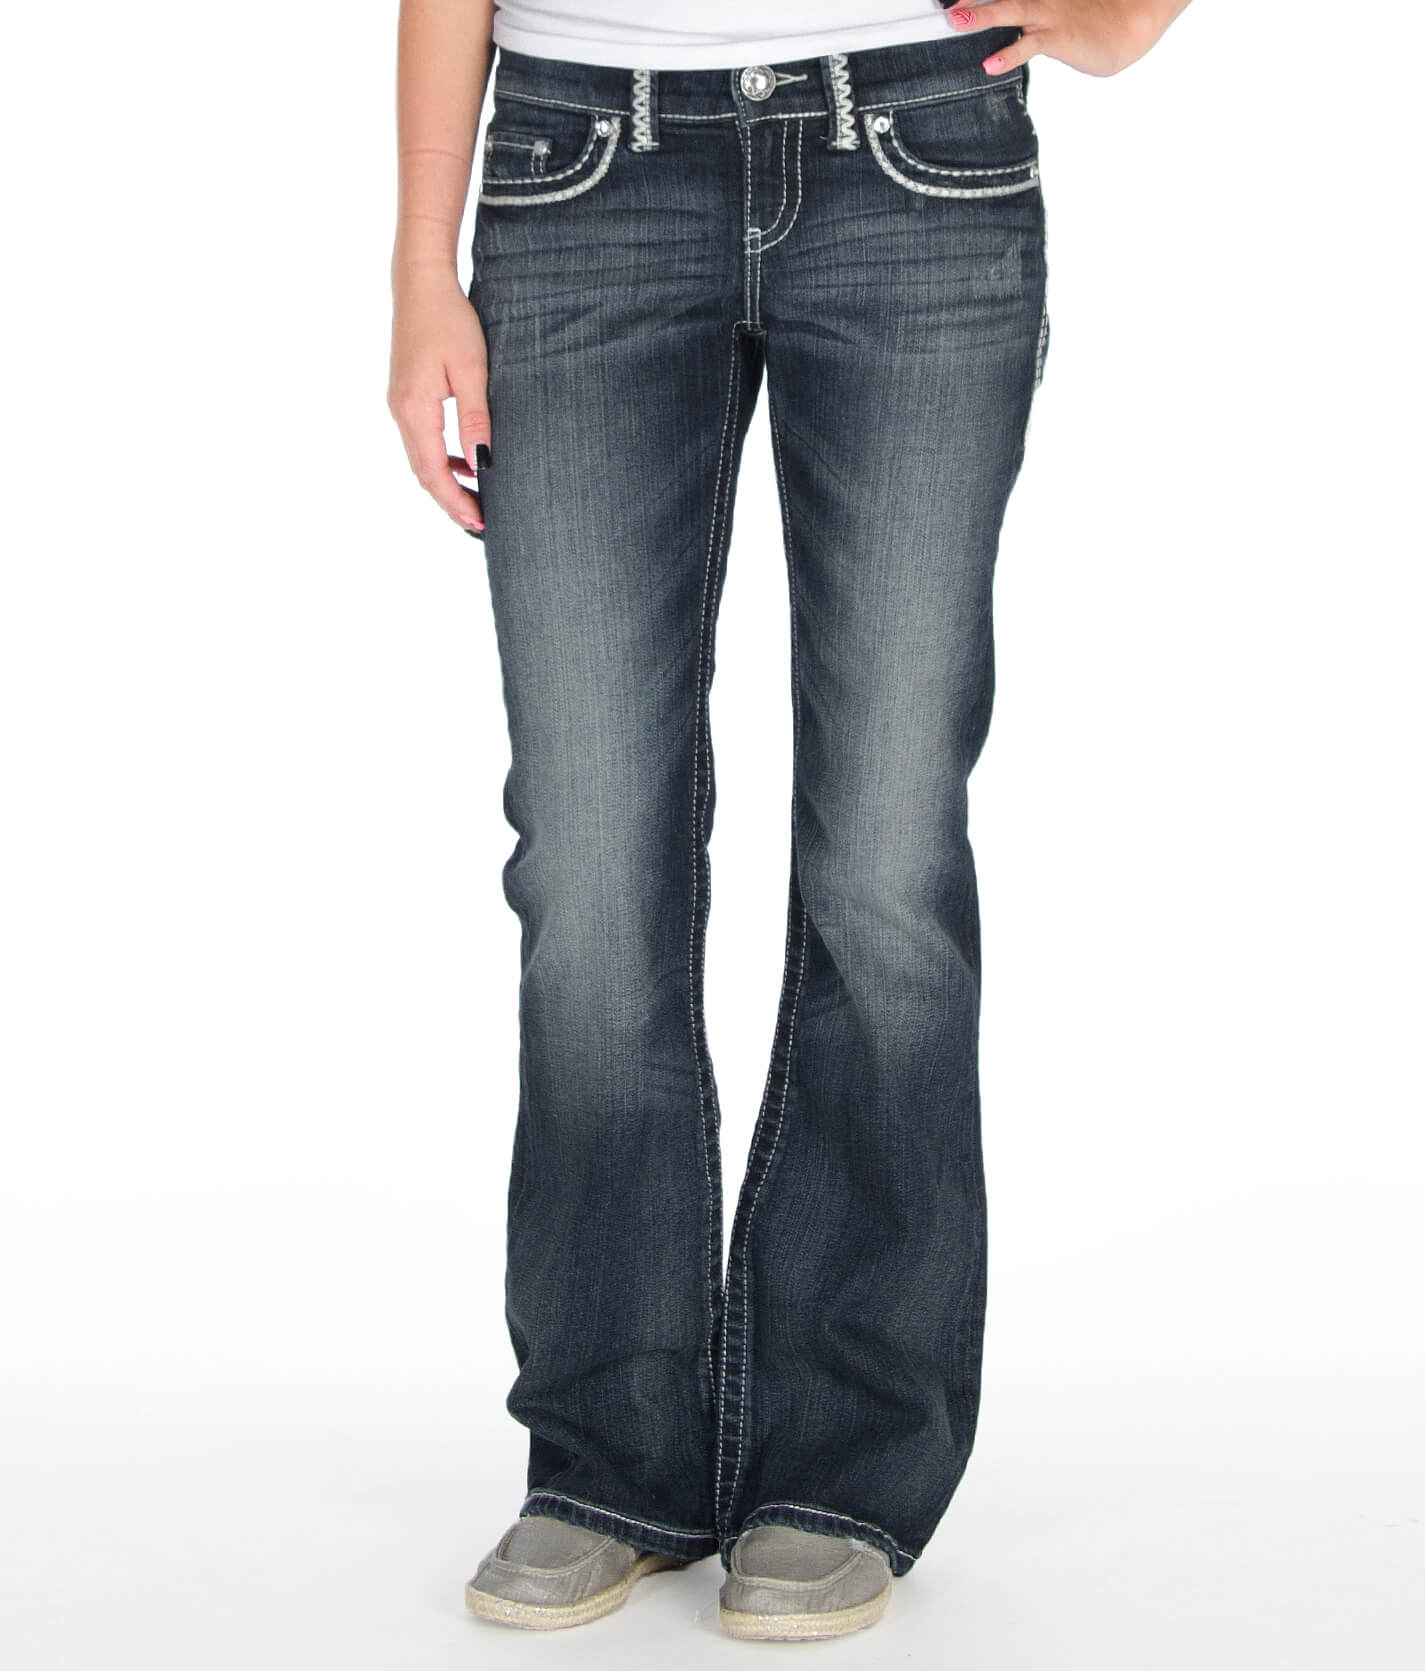 levis carbon black jeans